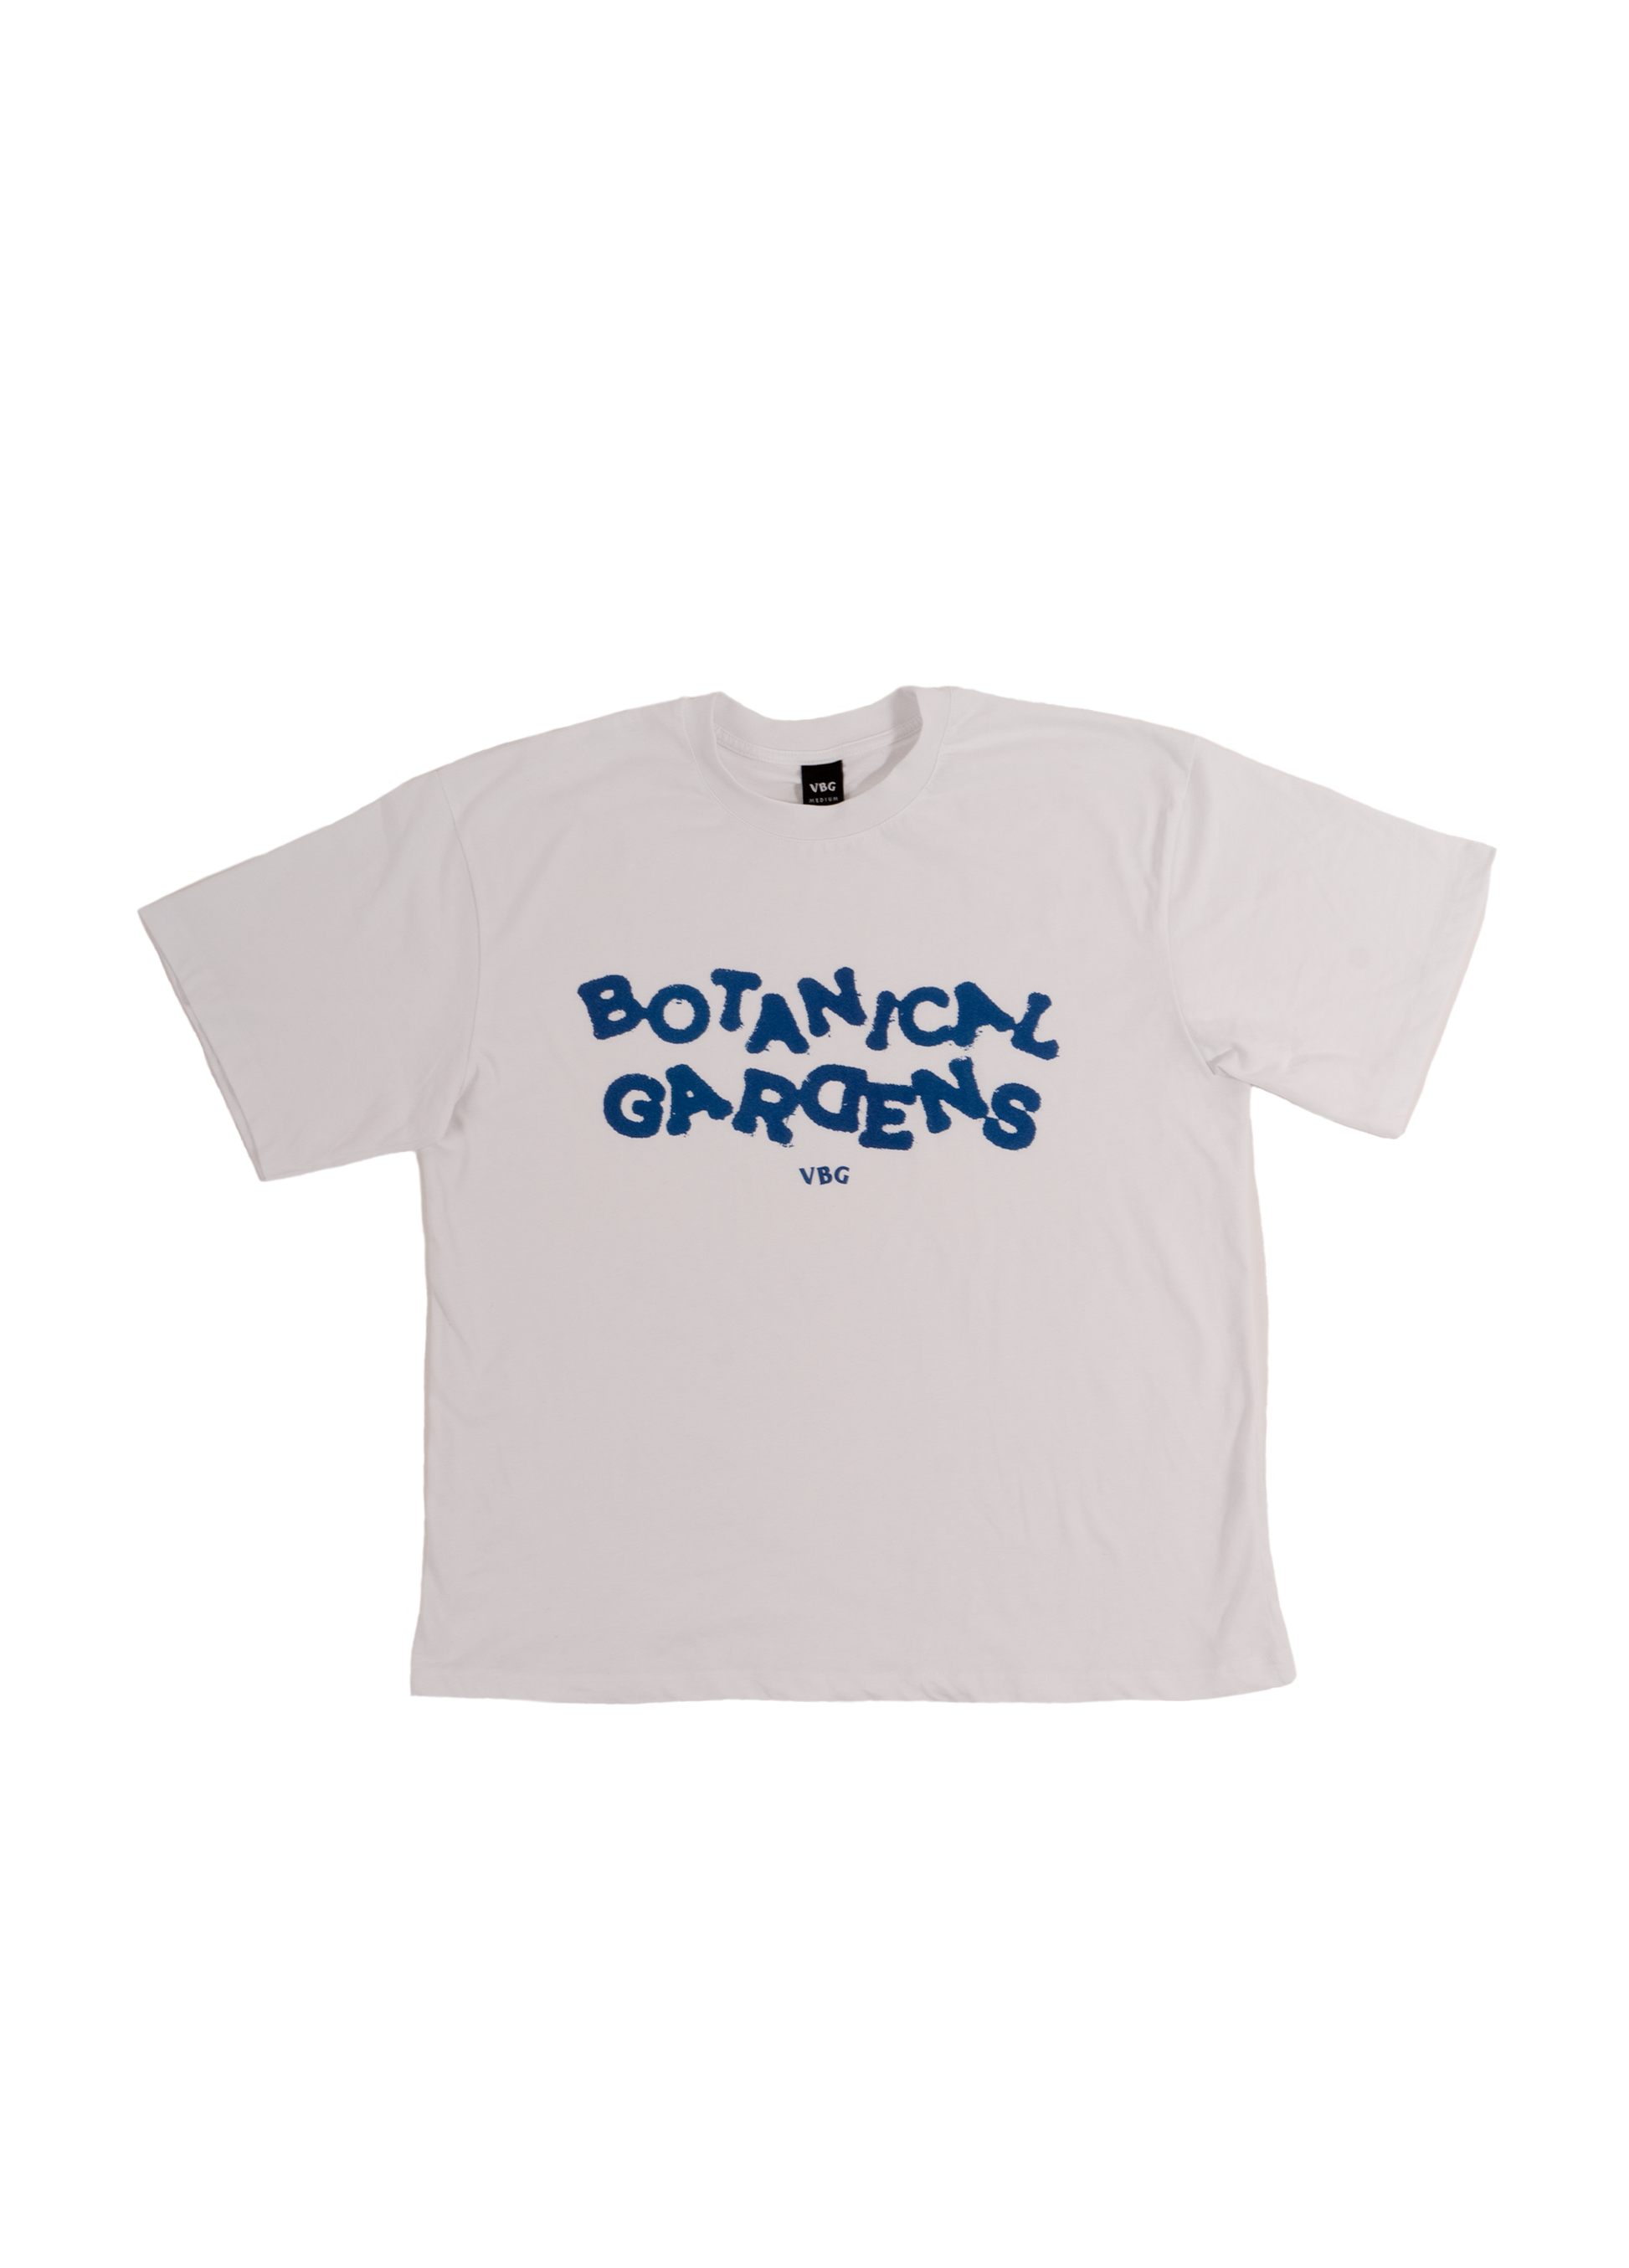 "Botanical Gardens" T-Shirt - White/Oceanblue - VBG